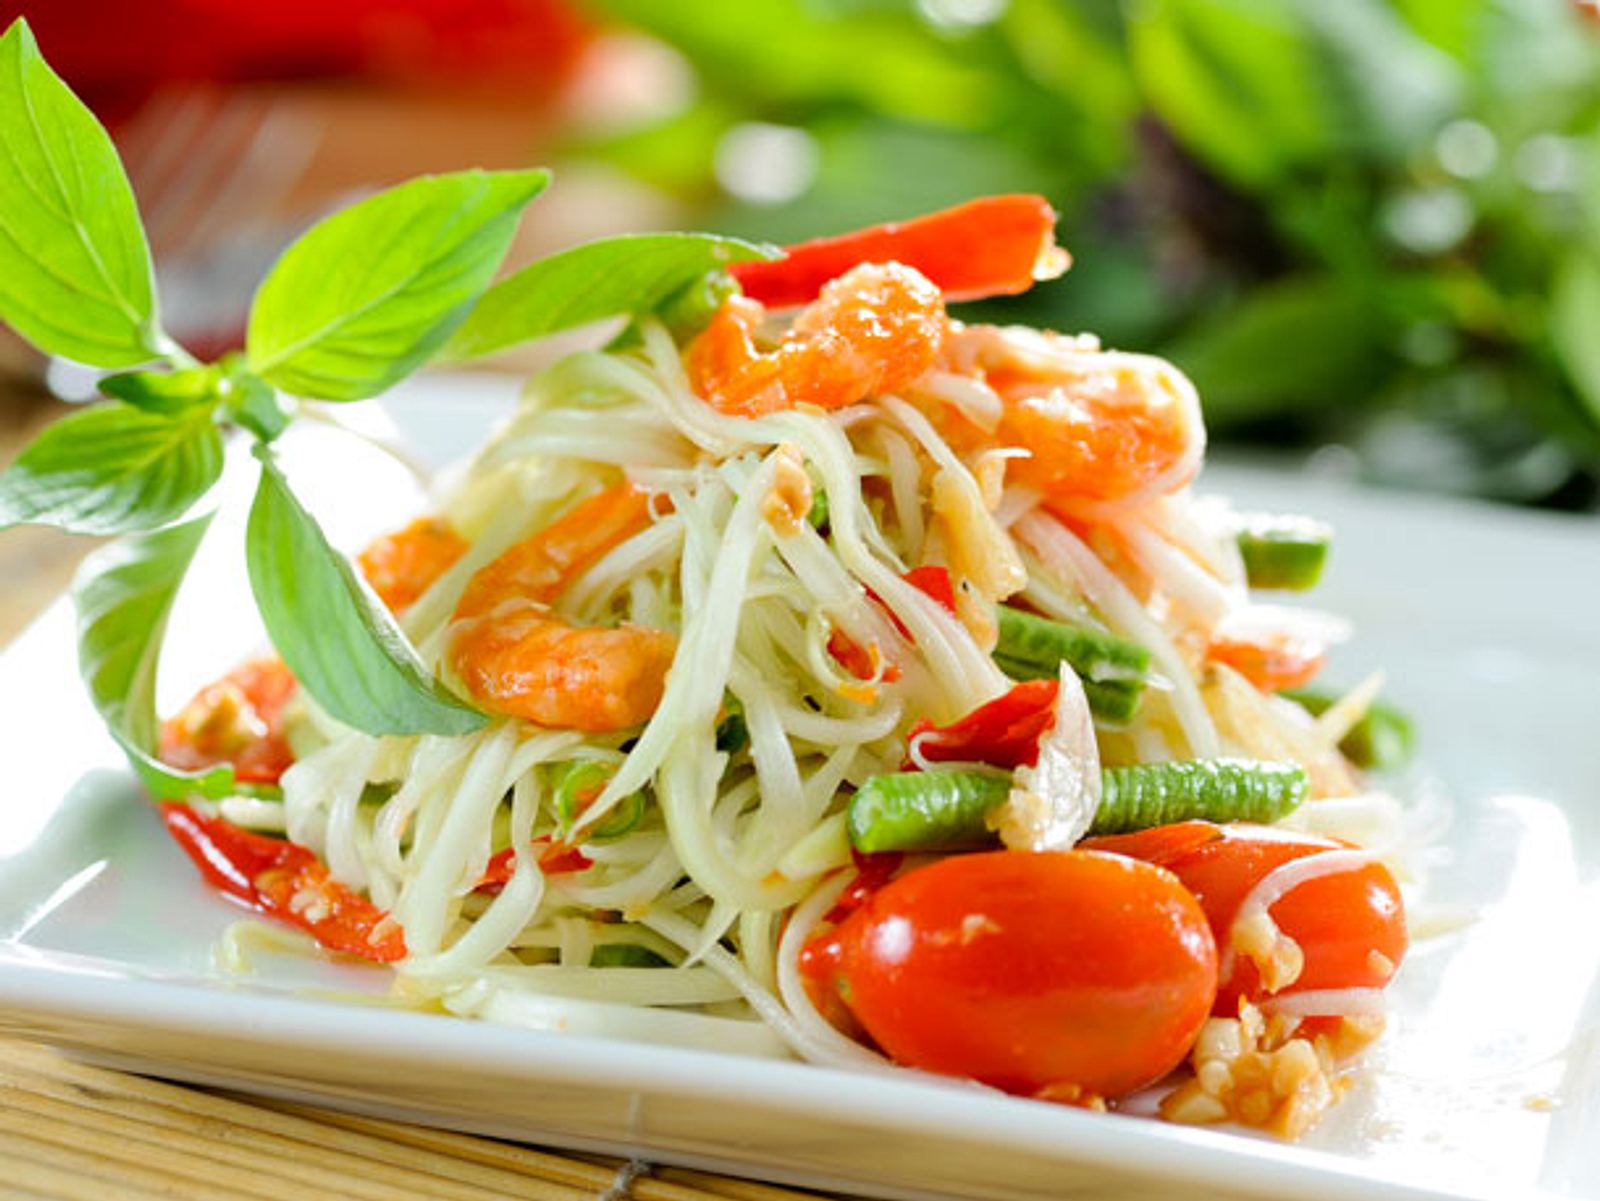 👨‍🍳 Новый триумф тайской кухни! В мировом рейтинге салатов Таиланд занял ряд высоких мест